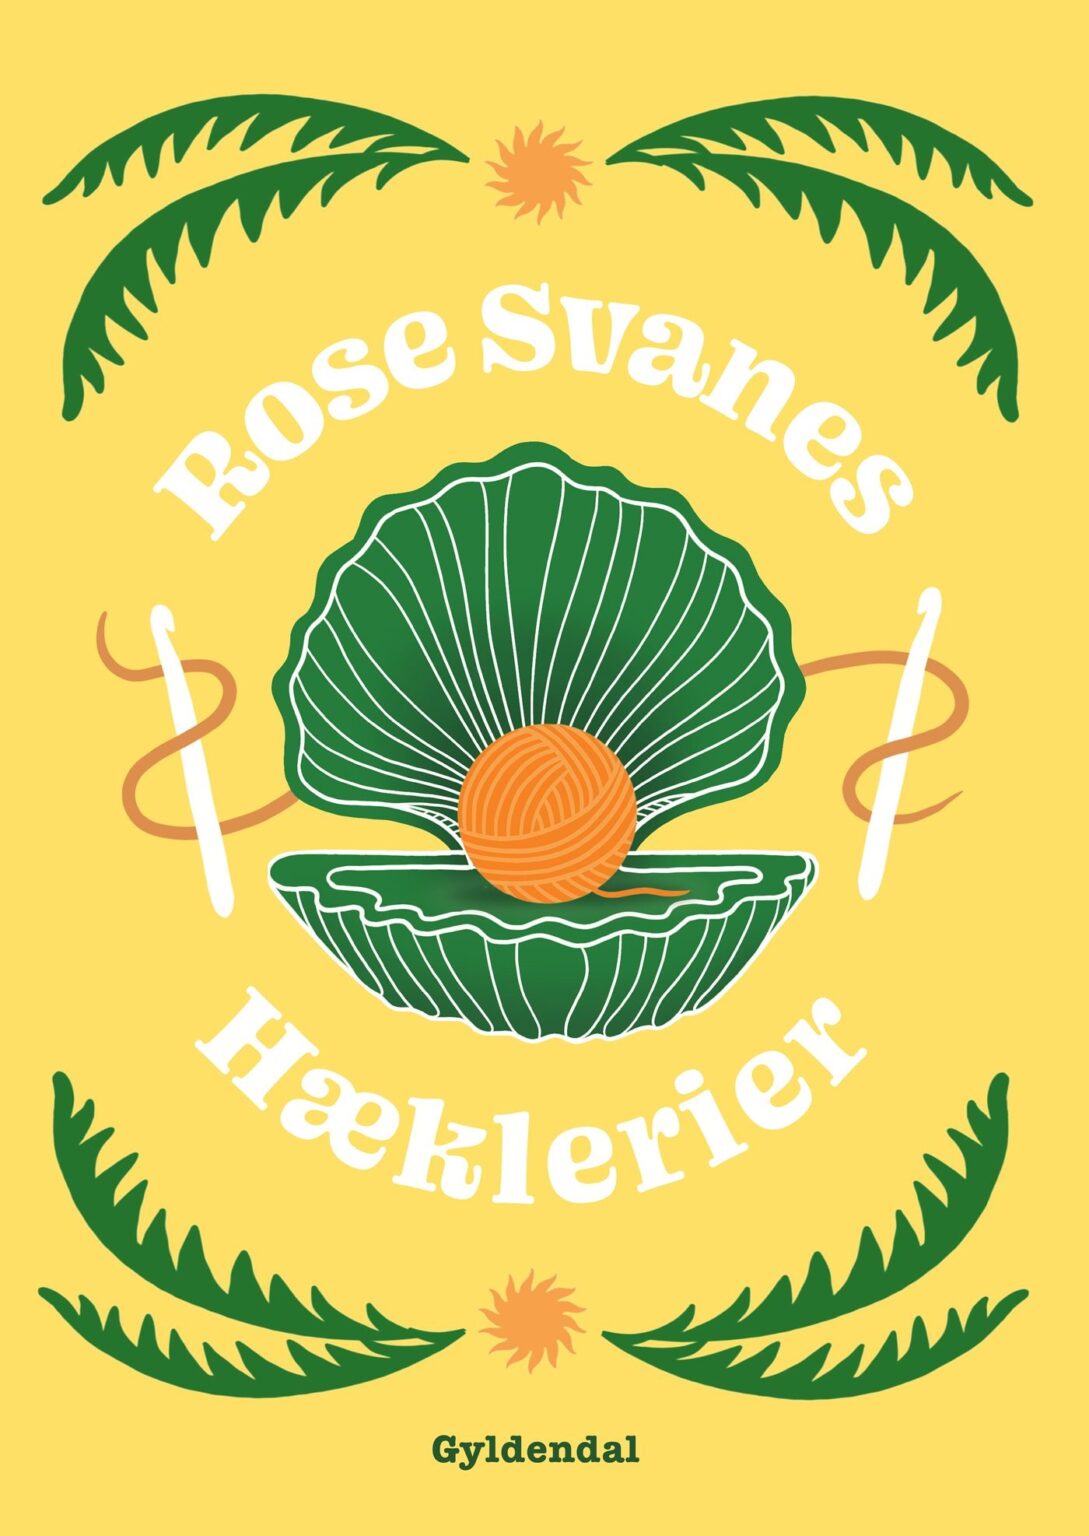 Rose Svanes Hæklerier